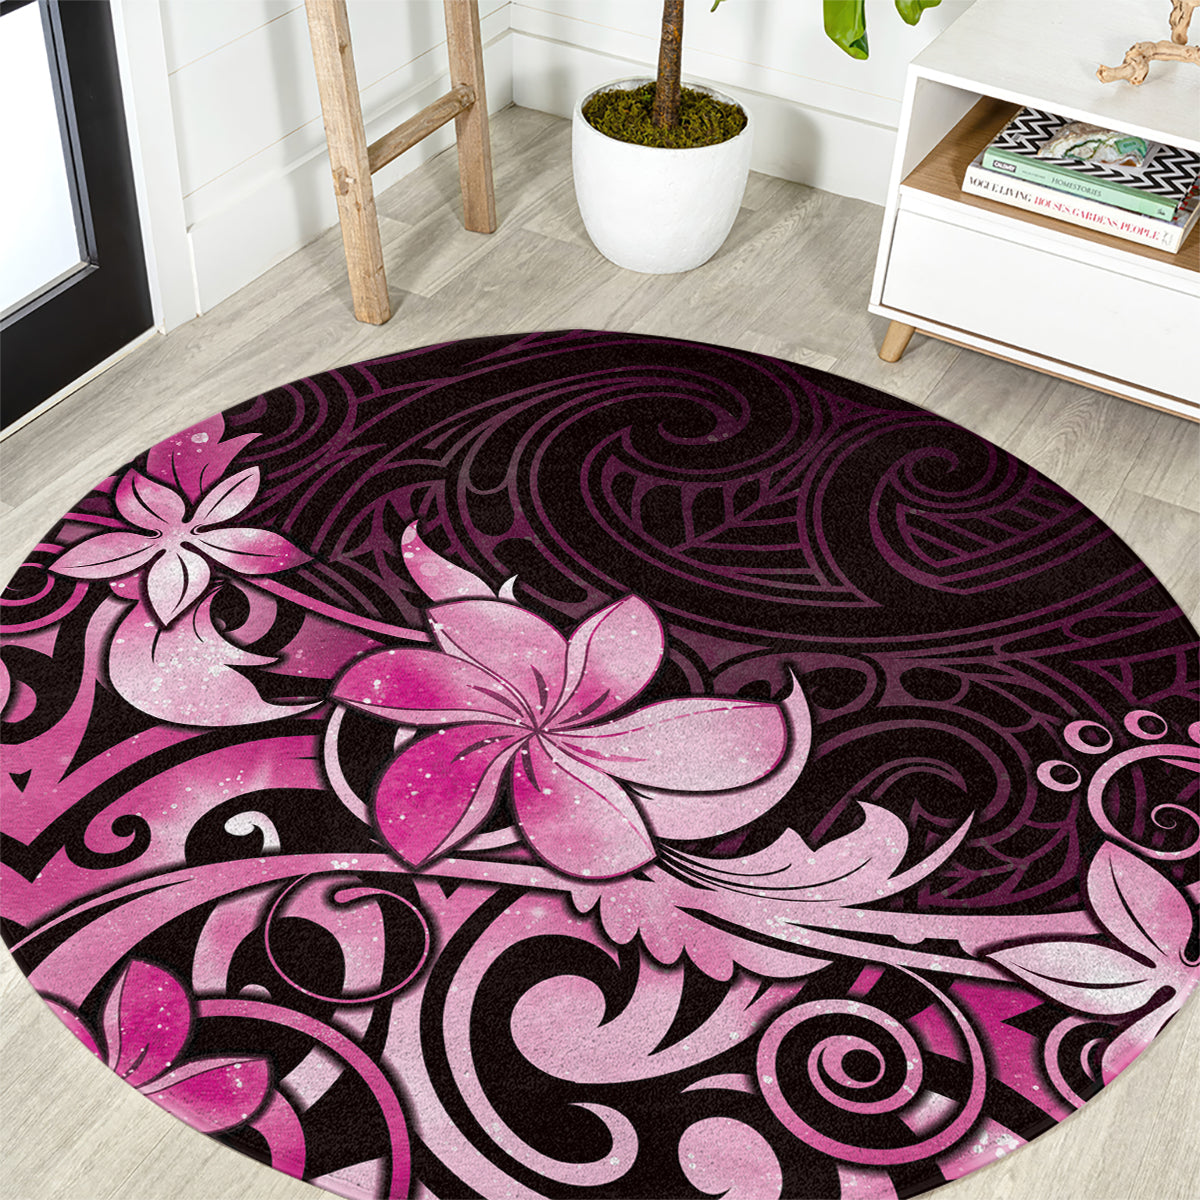 Matariki New Zealand Round Carpet Maori Pattern Pink Galaxy